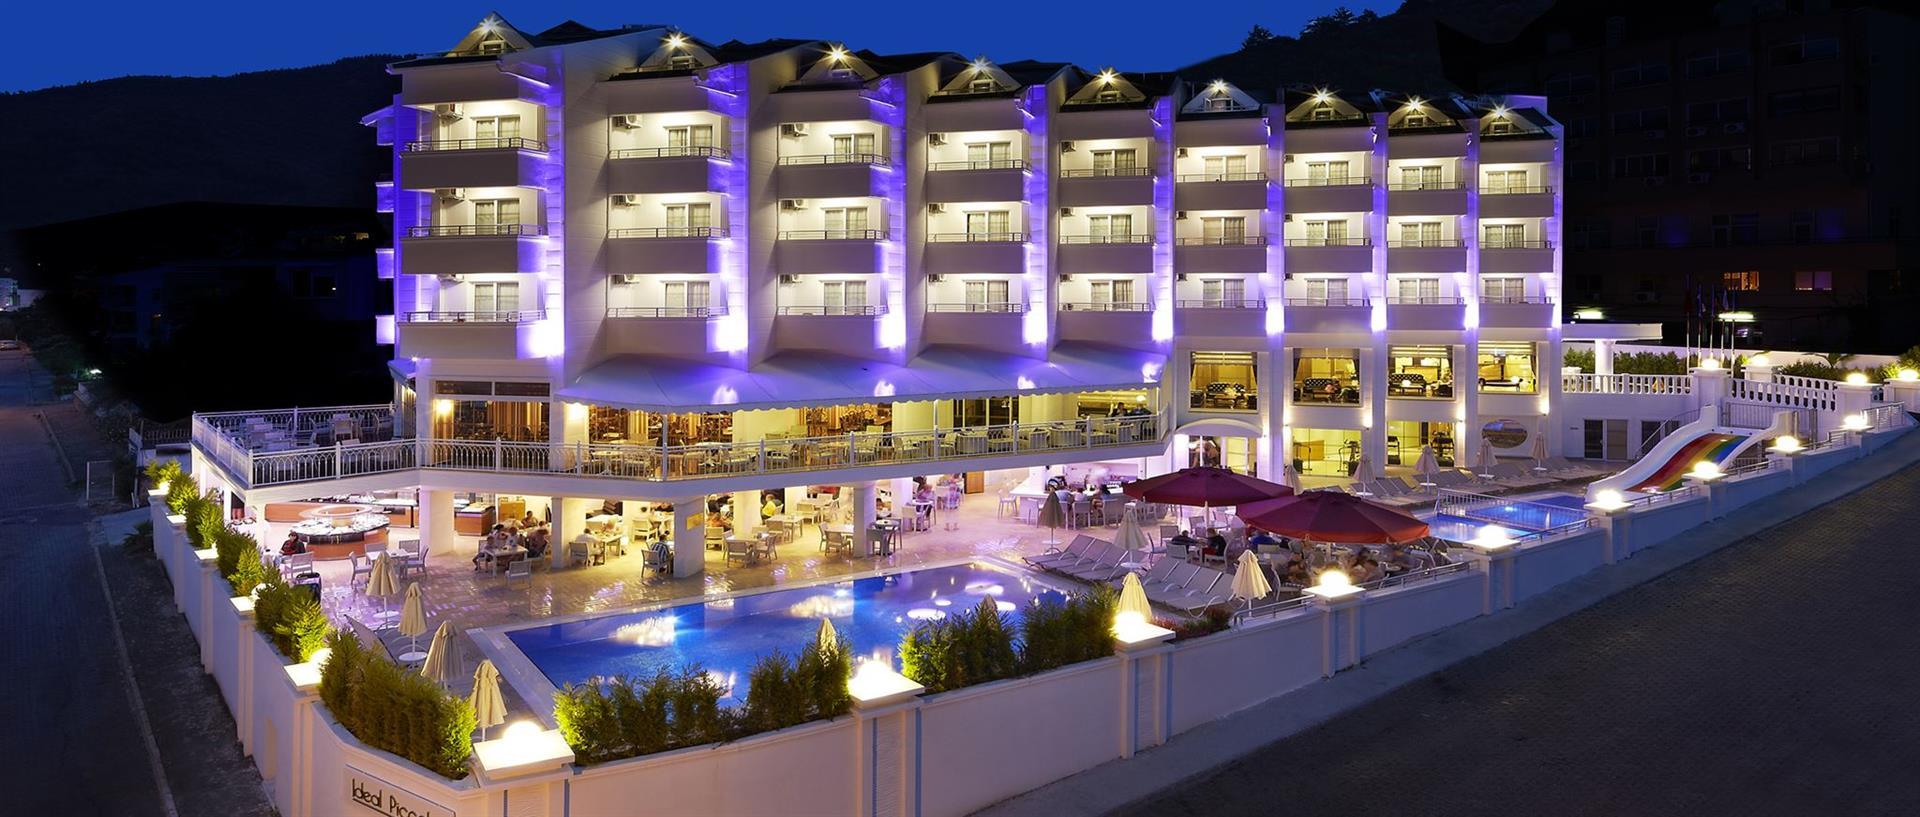 фото отеля в Турции